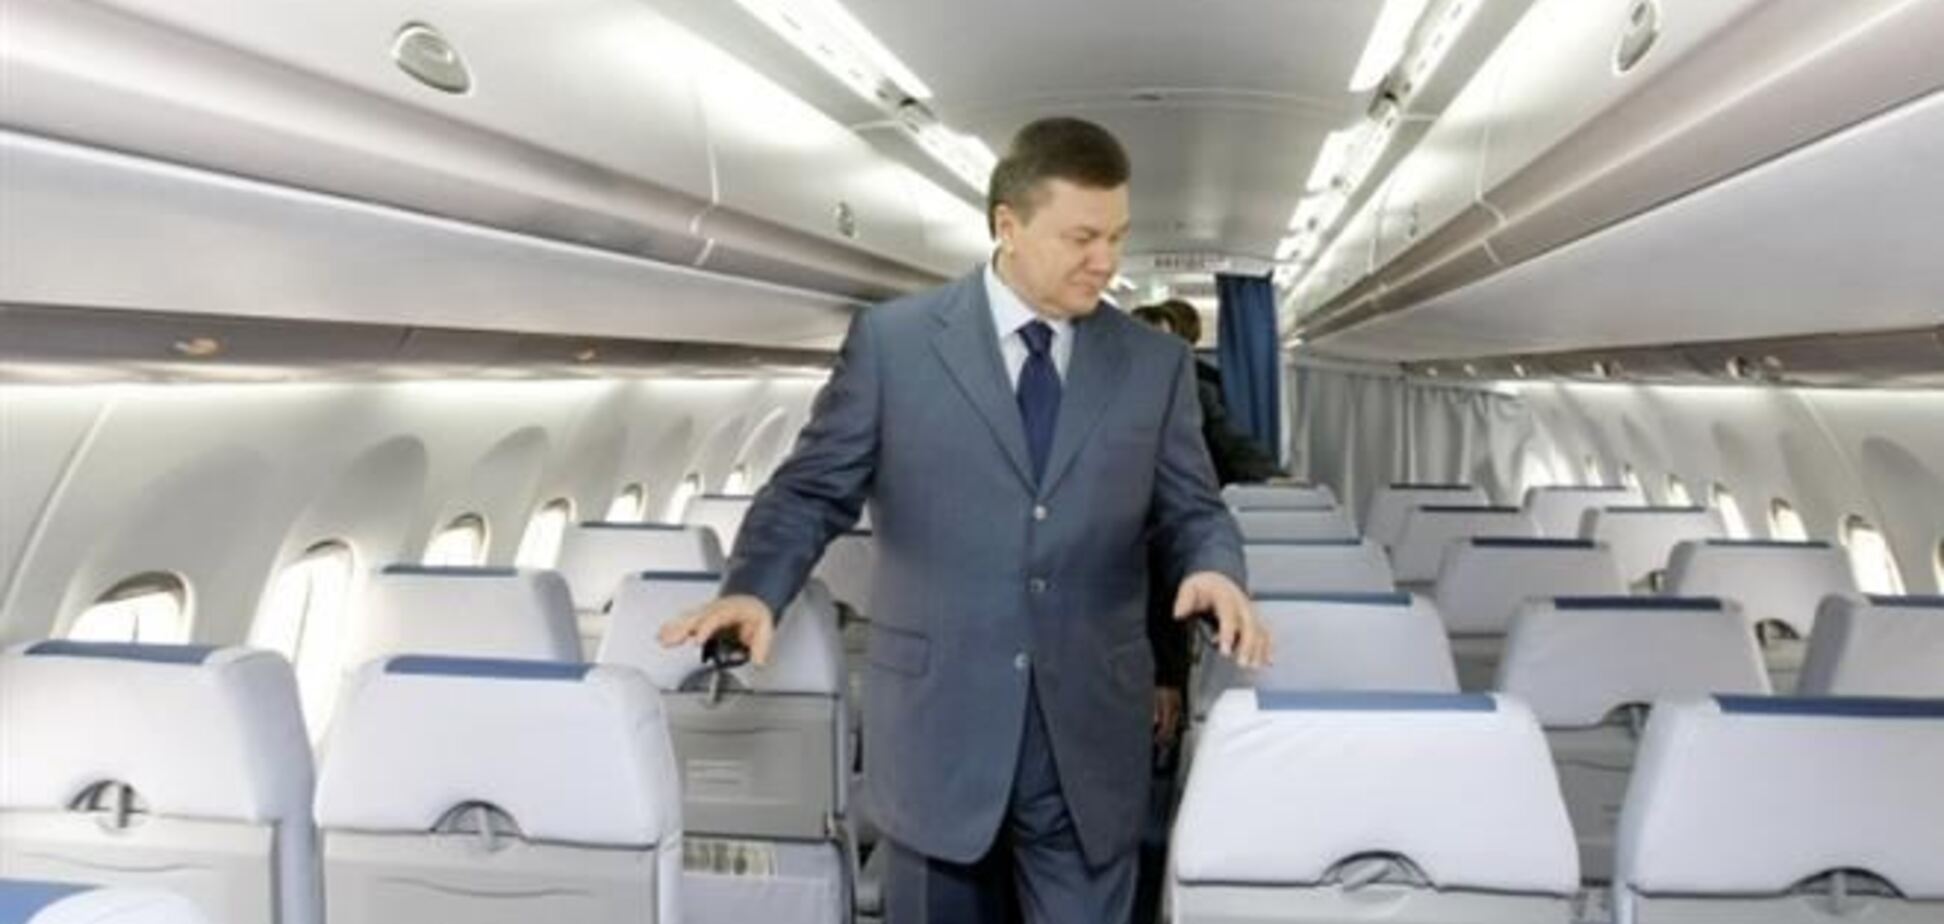 Герман: Янукович у п'ятницю вилетів до Харкова для спілкування з виборцями